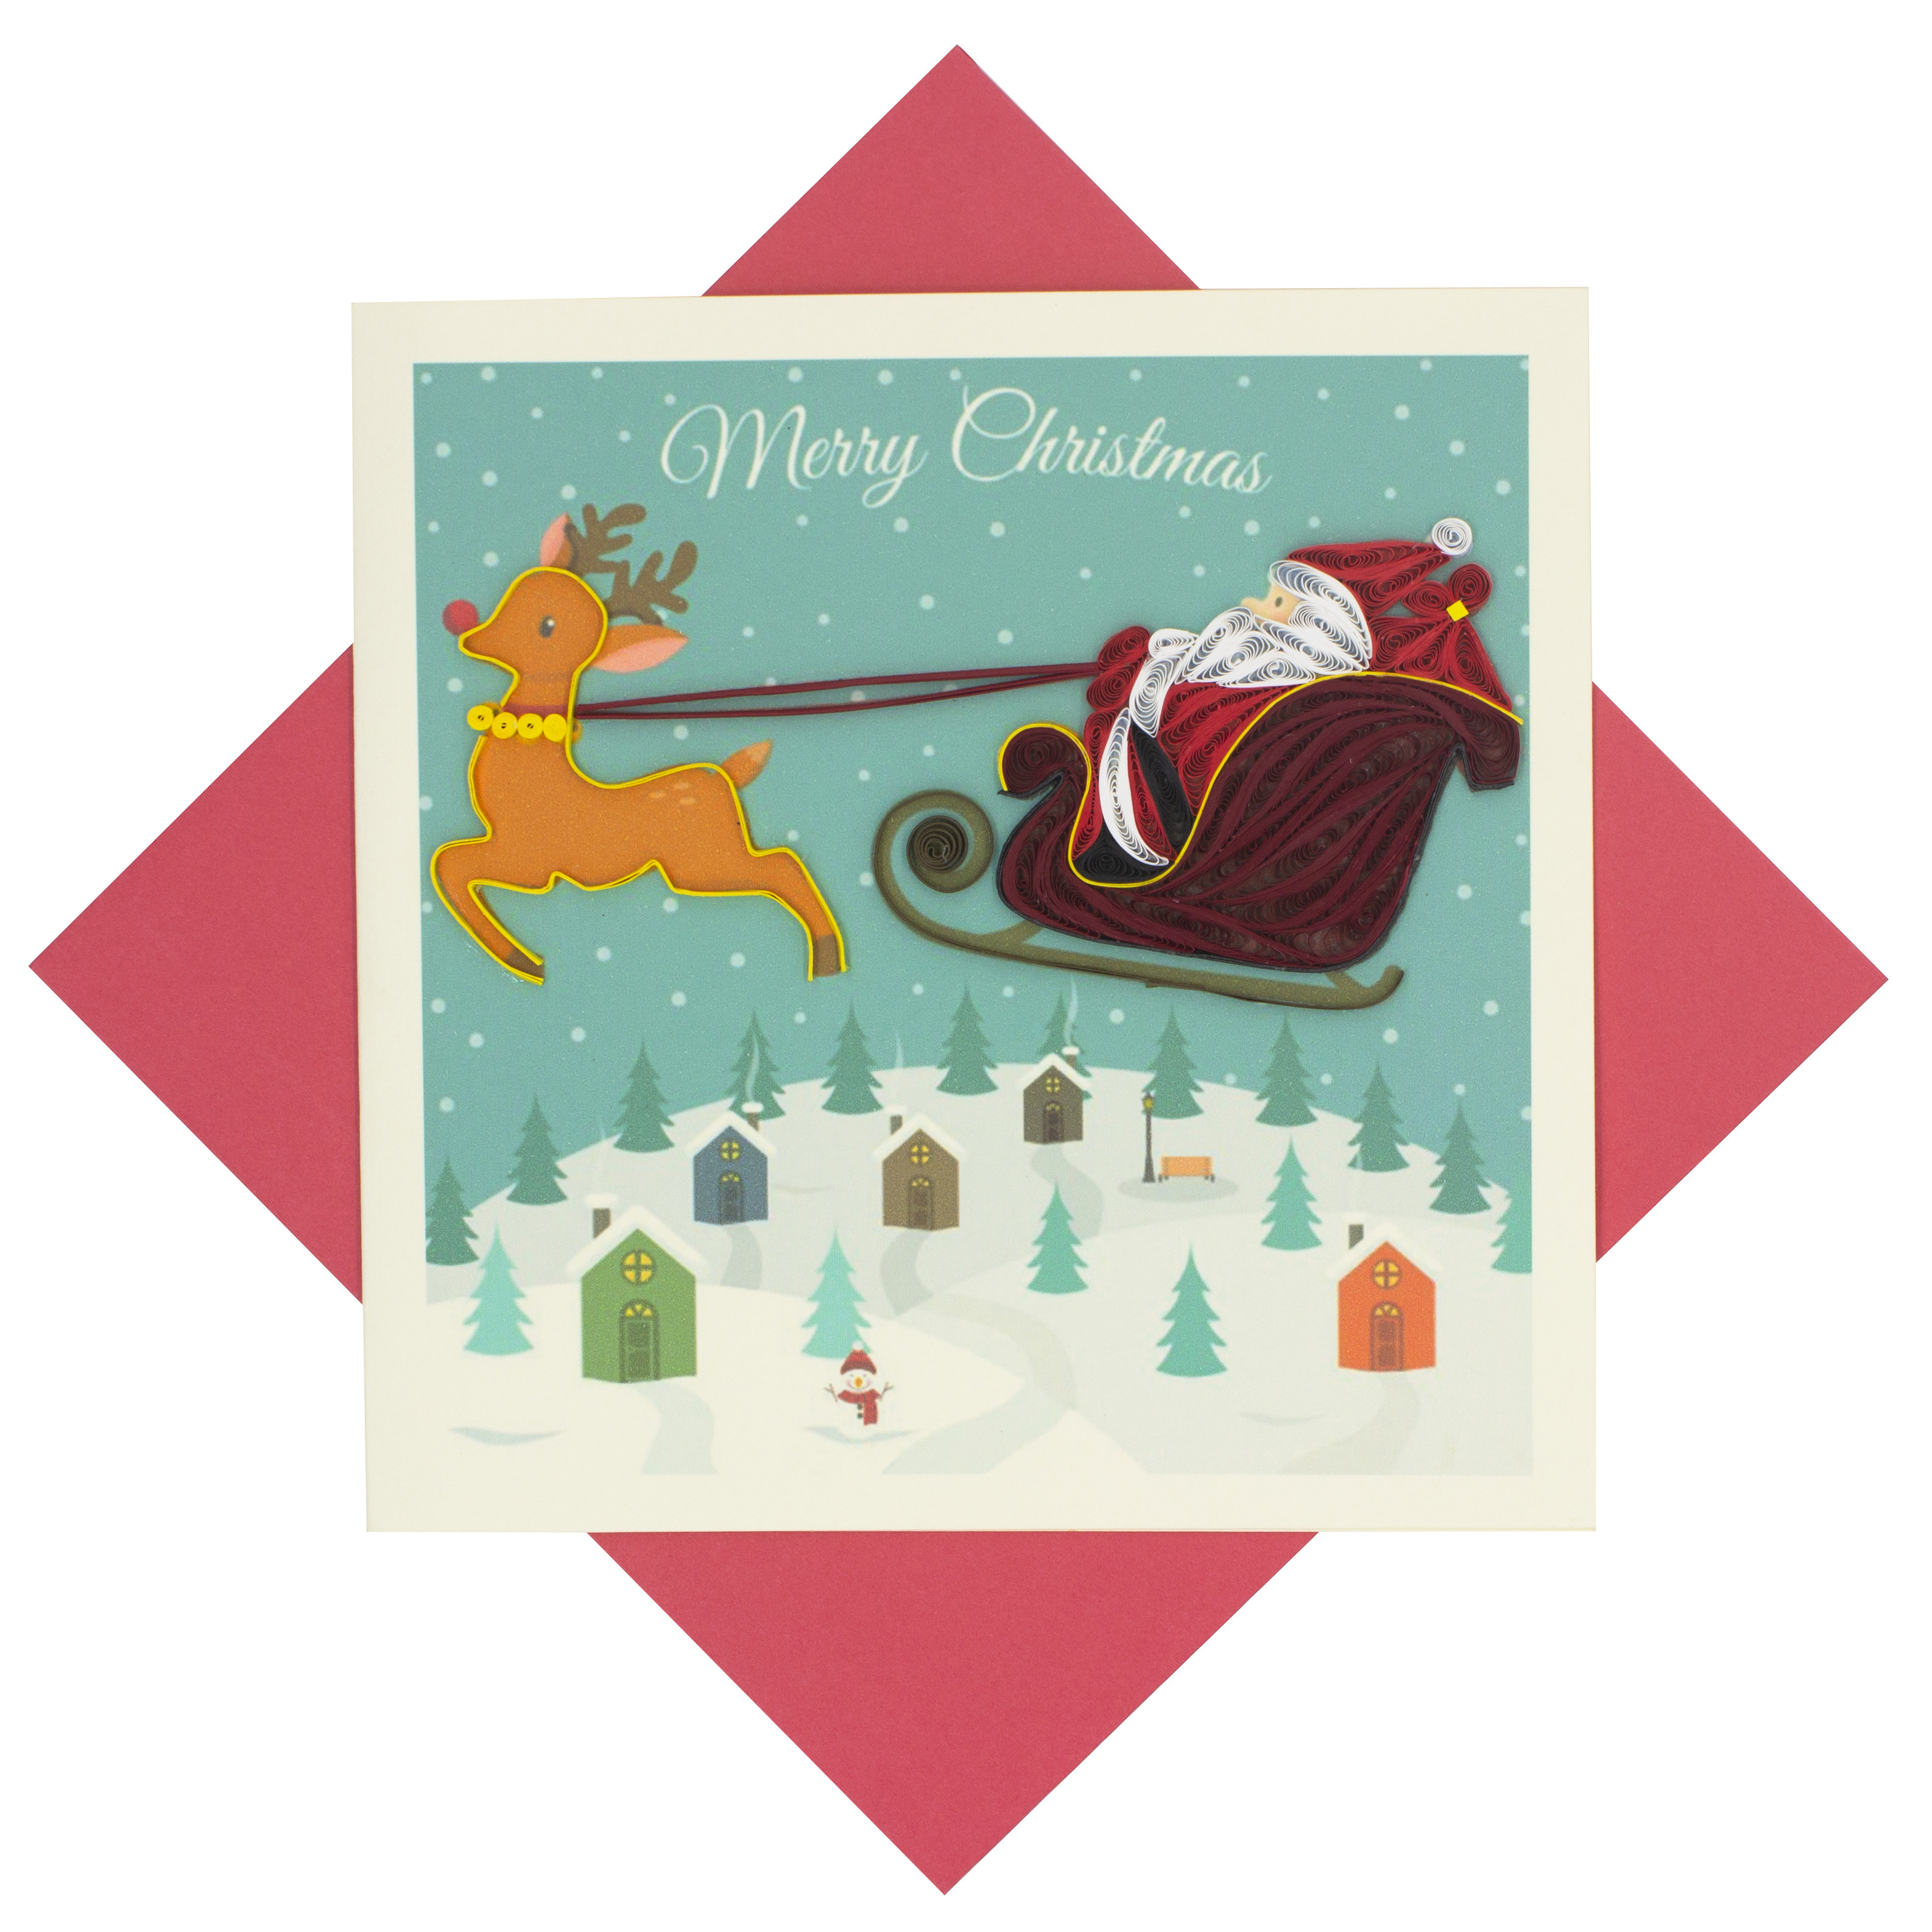 Hình ảnh Tiki NowThiệp NOEL Giấy Xoắn Thủ Công (Quilling Card) Tuần Lộc Kéo Xe Merry Christmas - Tặng kèm khung giấy để bàn. Thiệp Giáng Sinh handmade độc đáo 